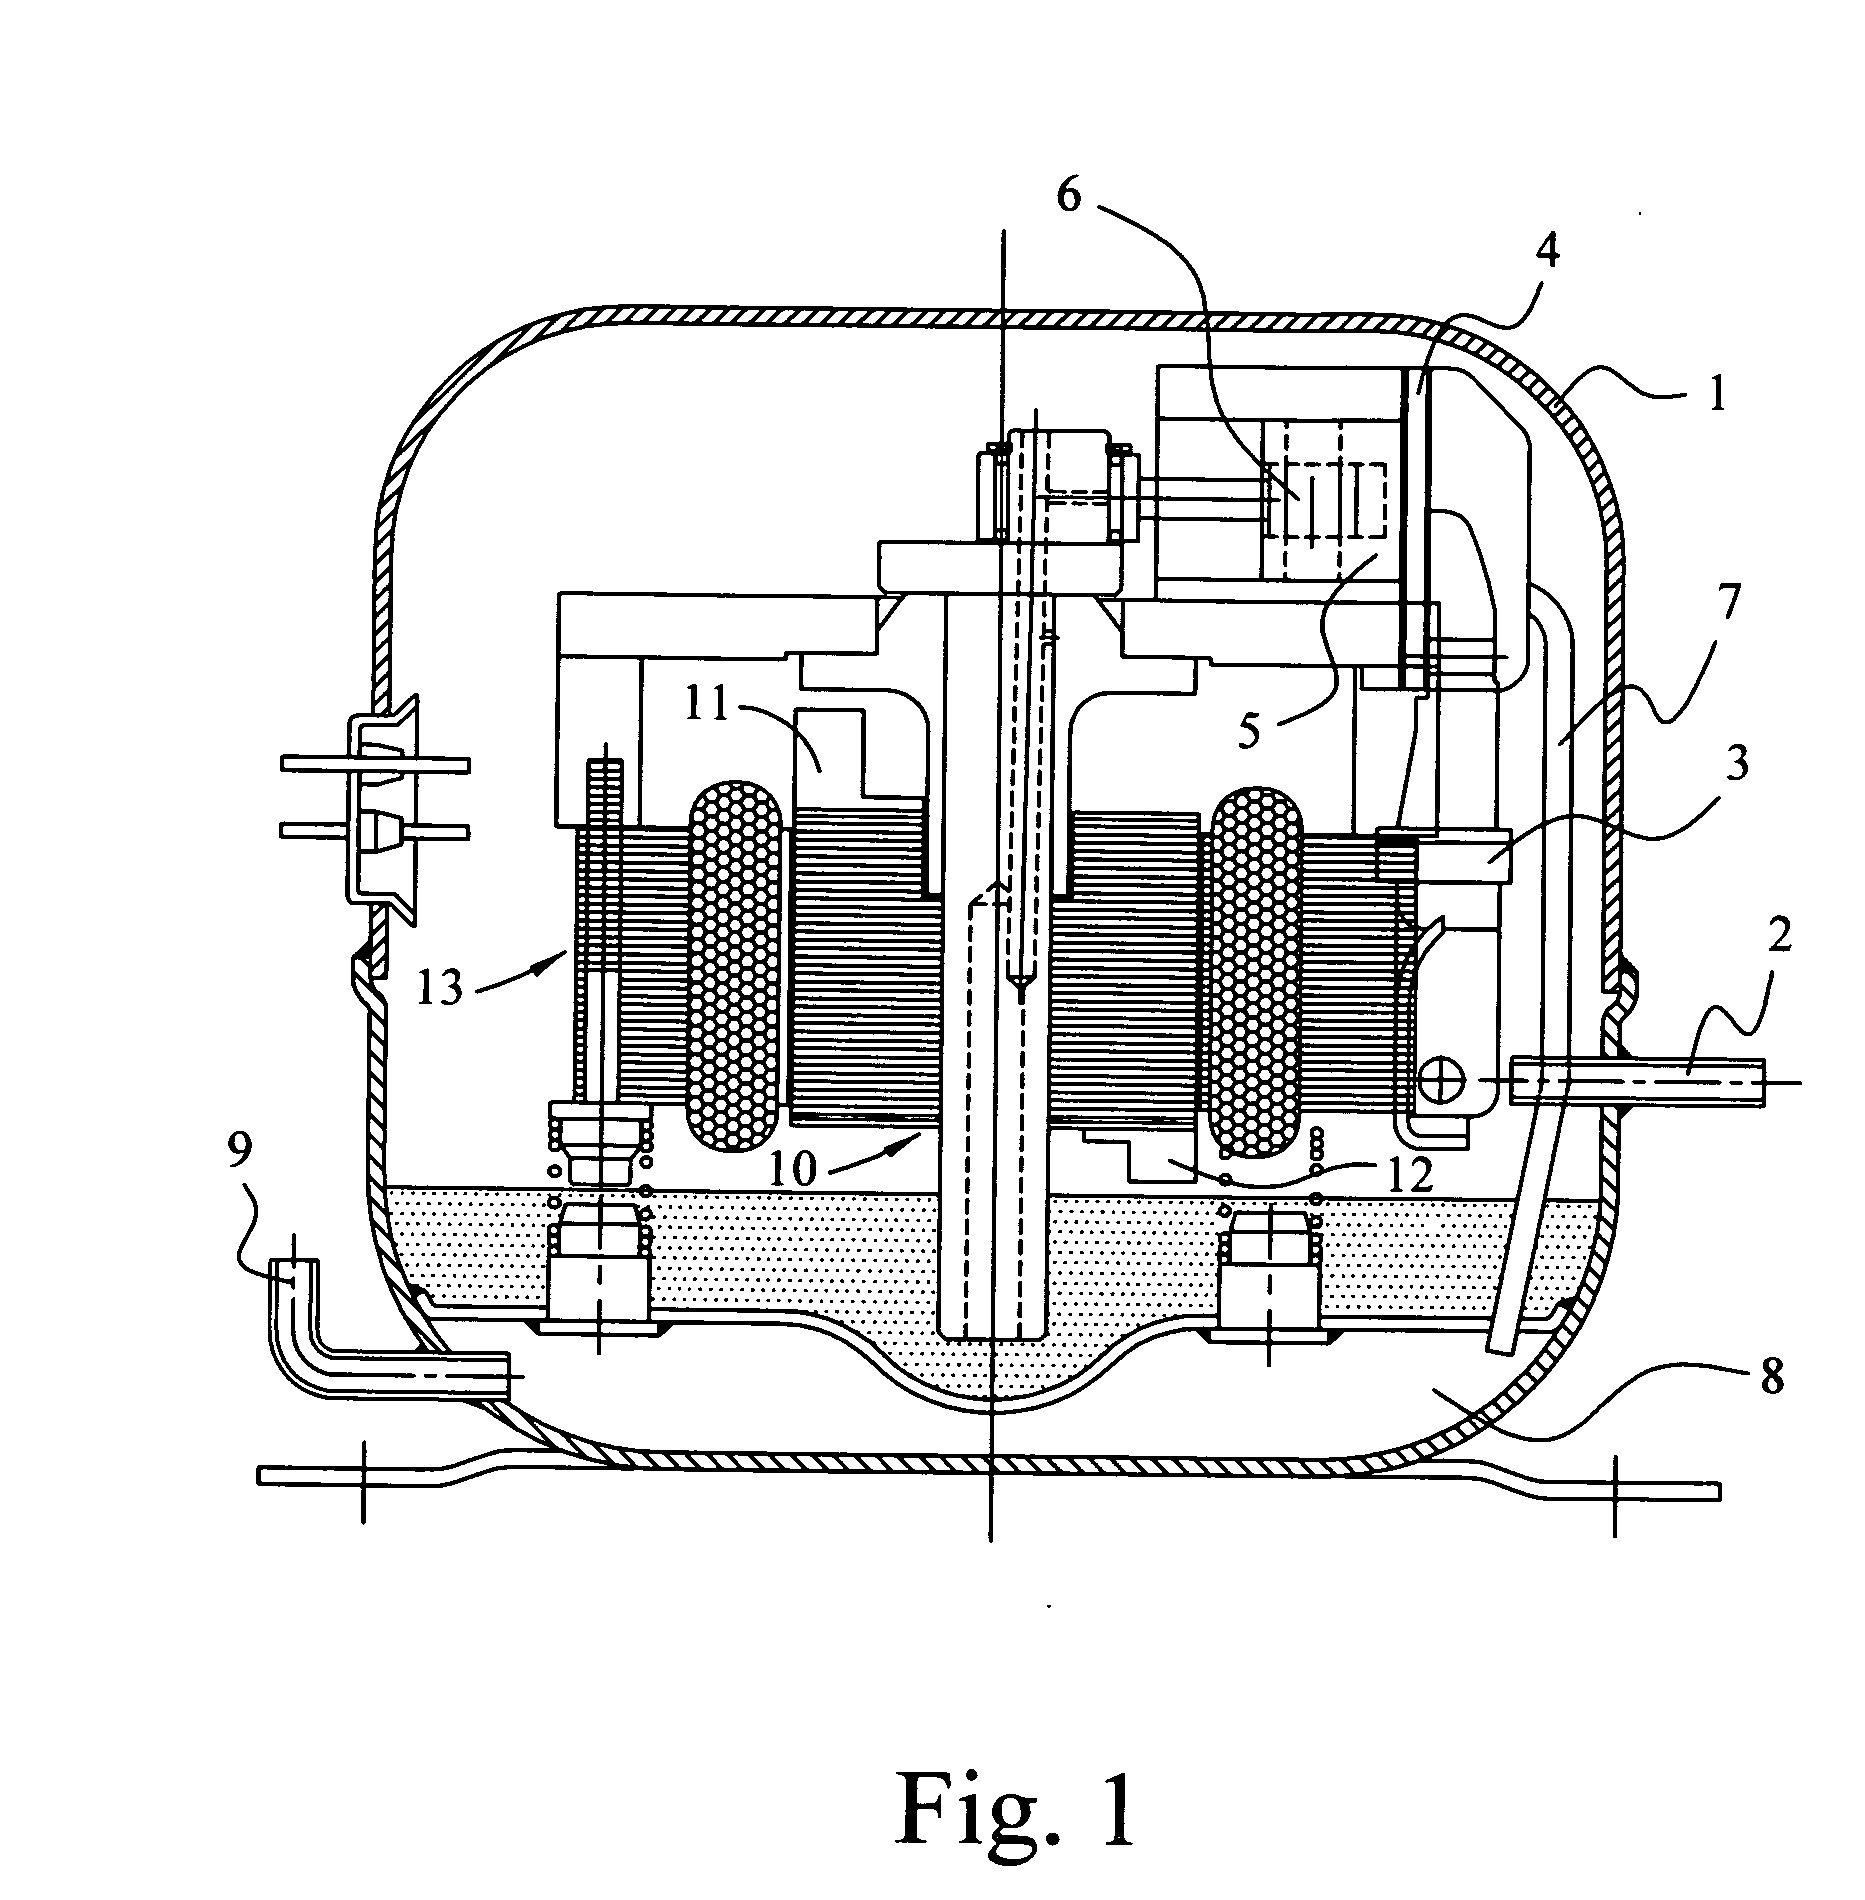 Motor mechanism of DC inverter-fed compressor